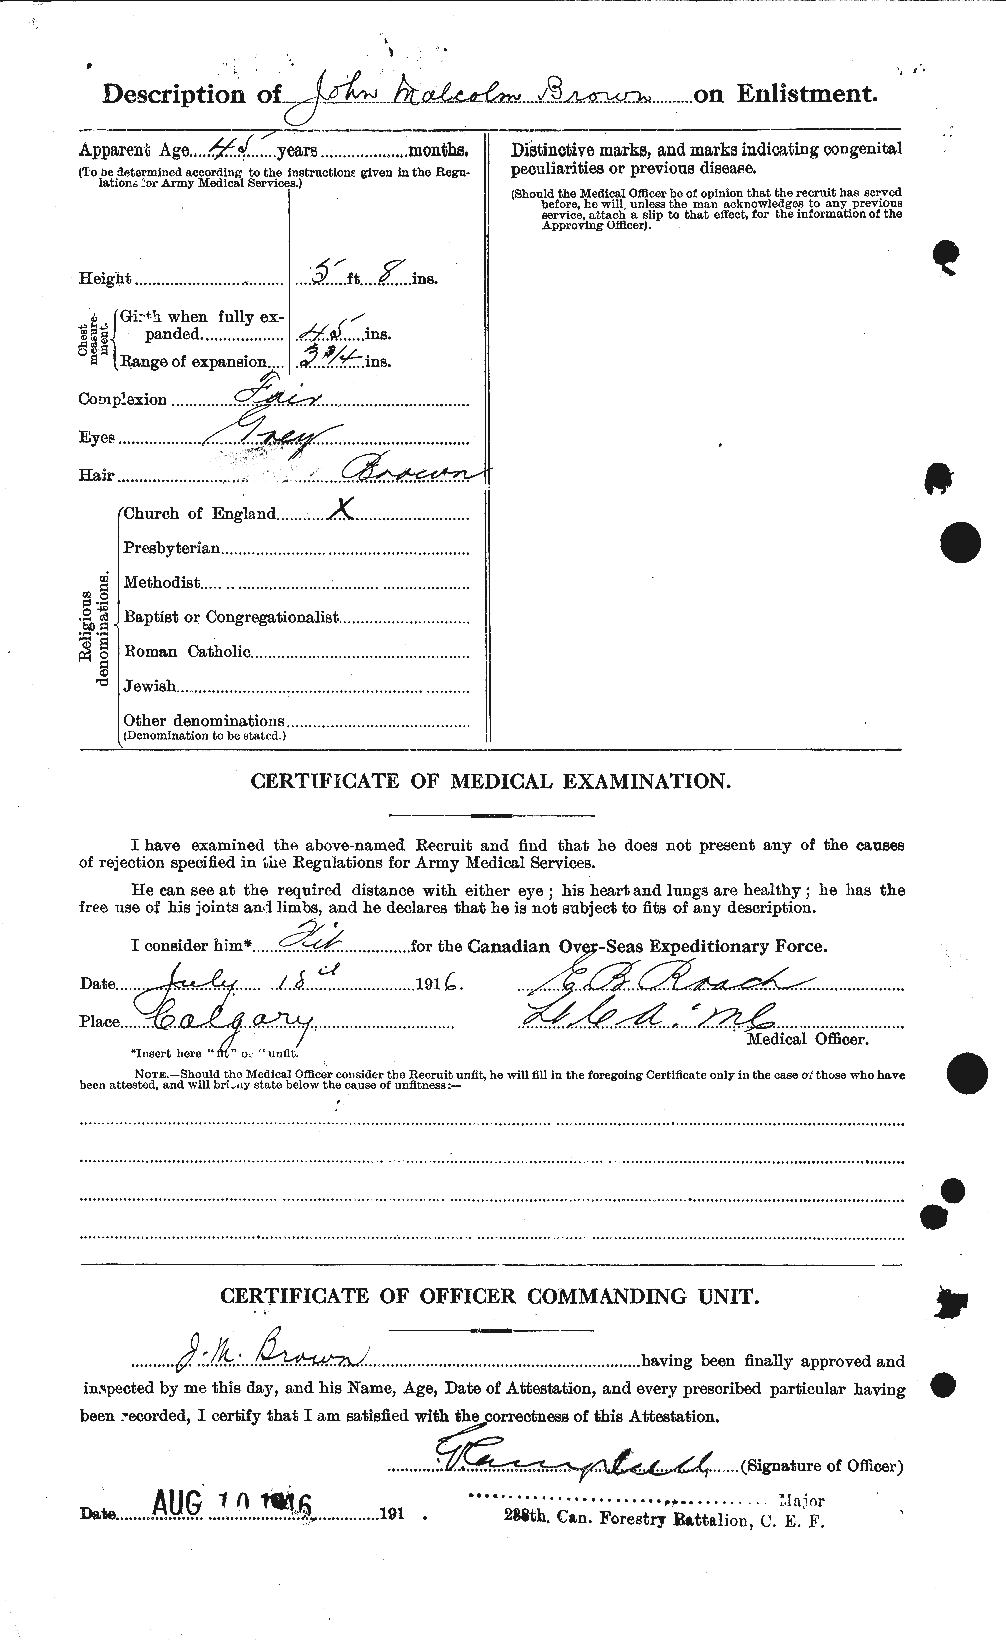 Dossiers du Personnel de la Première Guerre mondiale - CEC 265833b